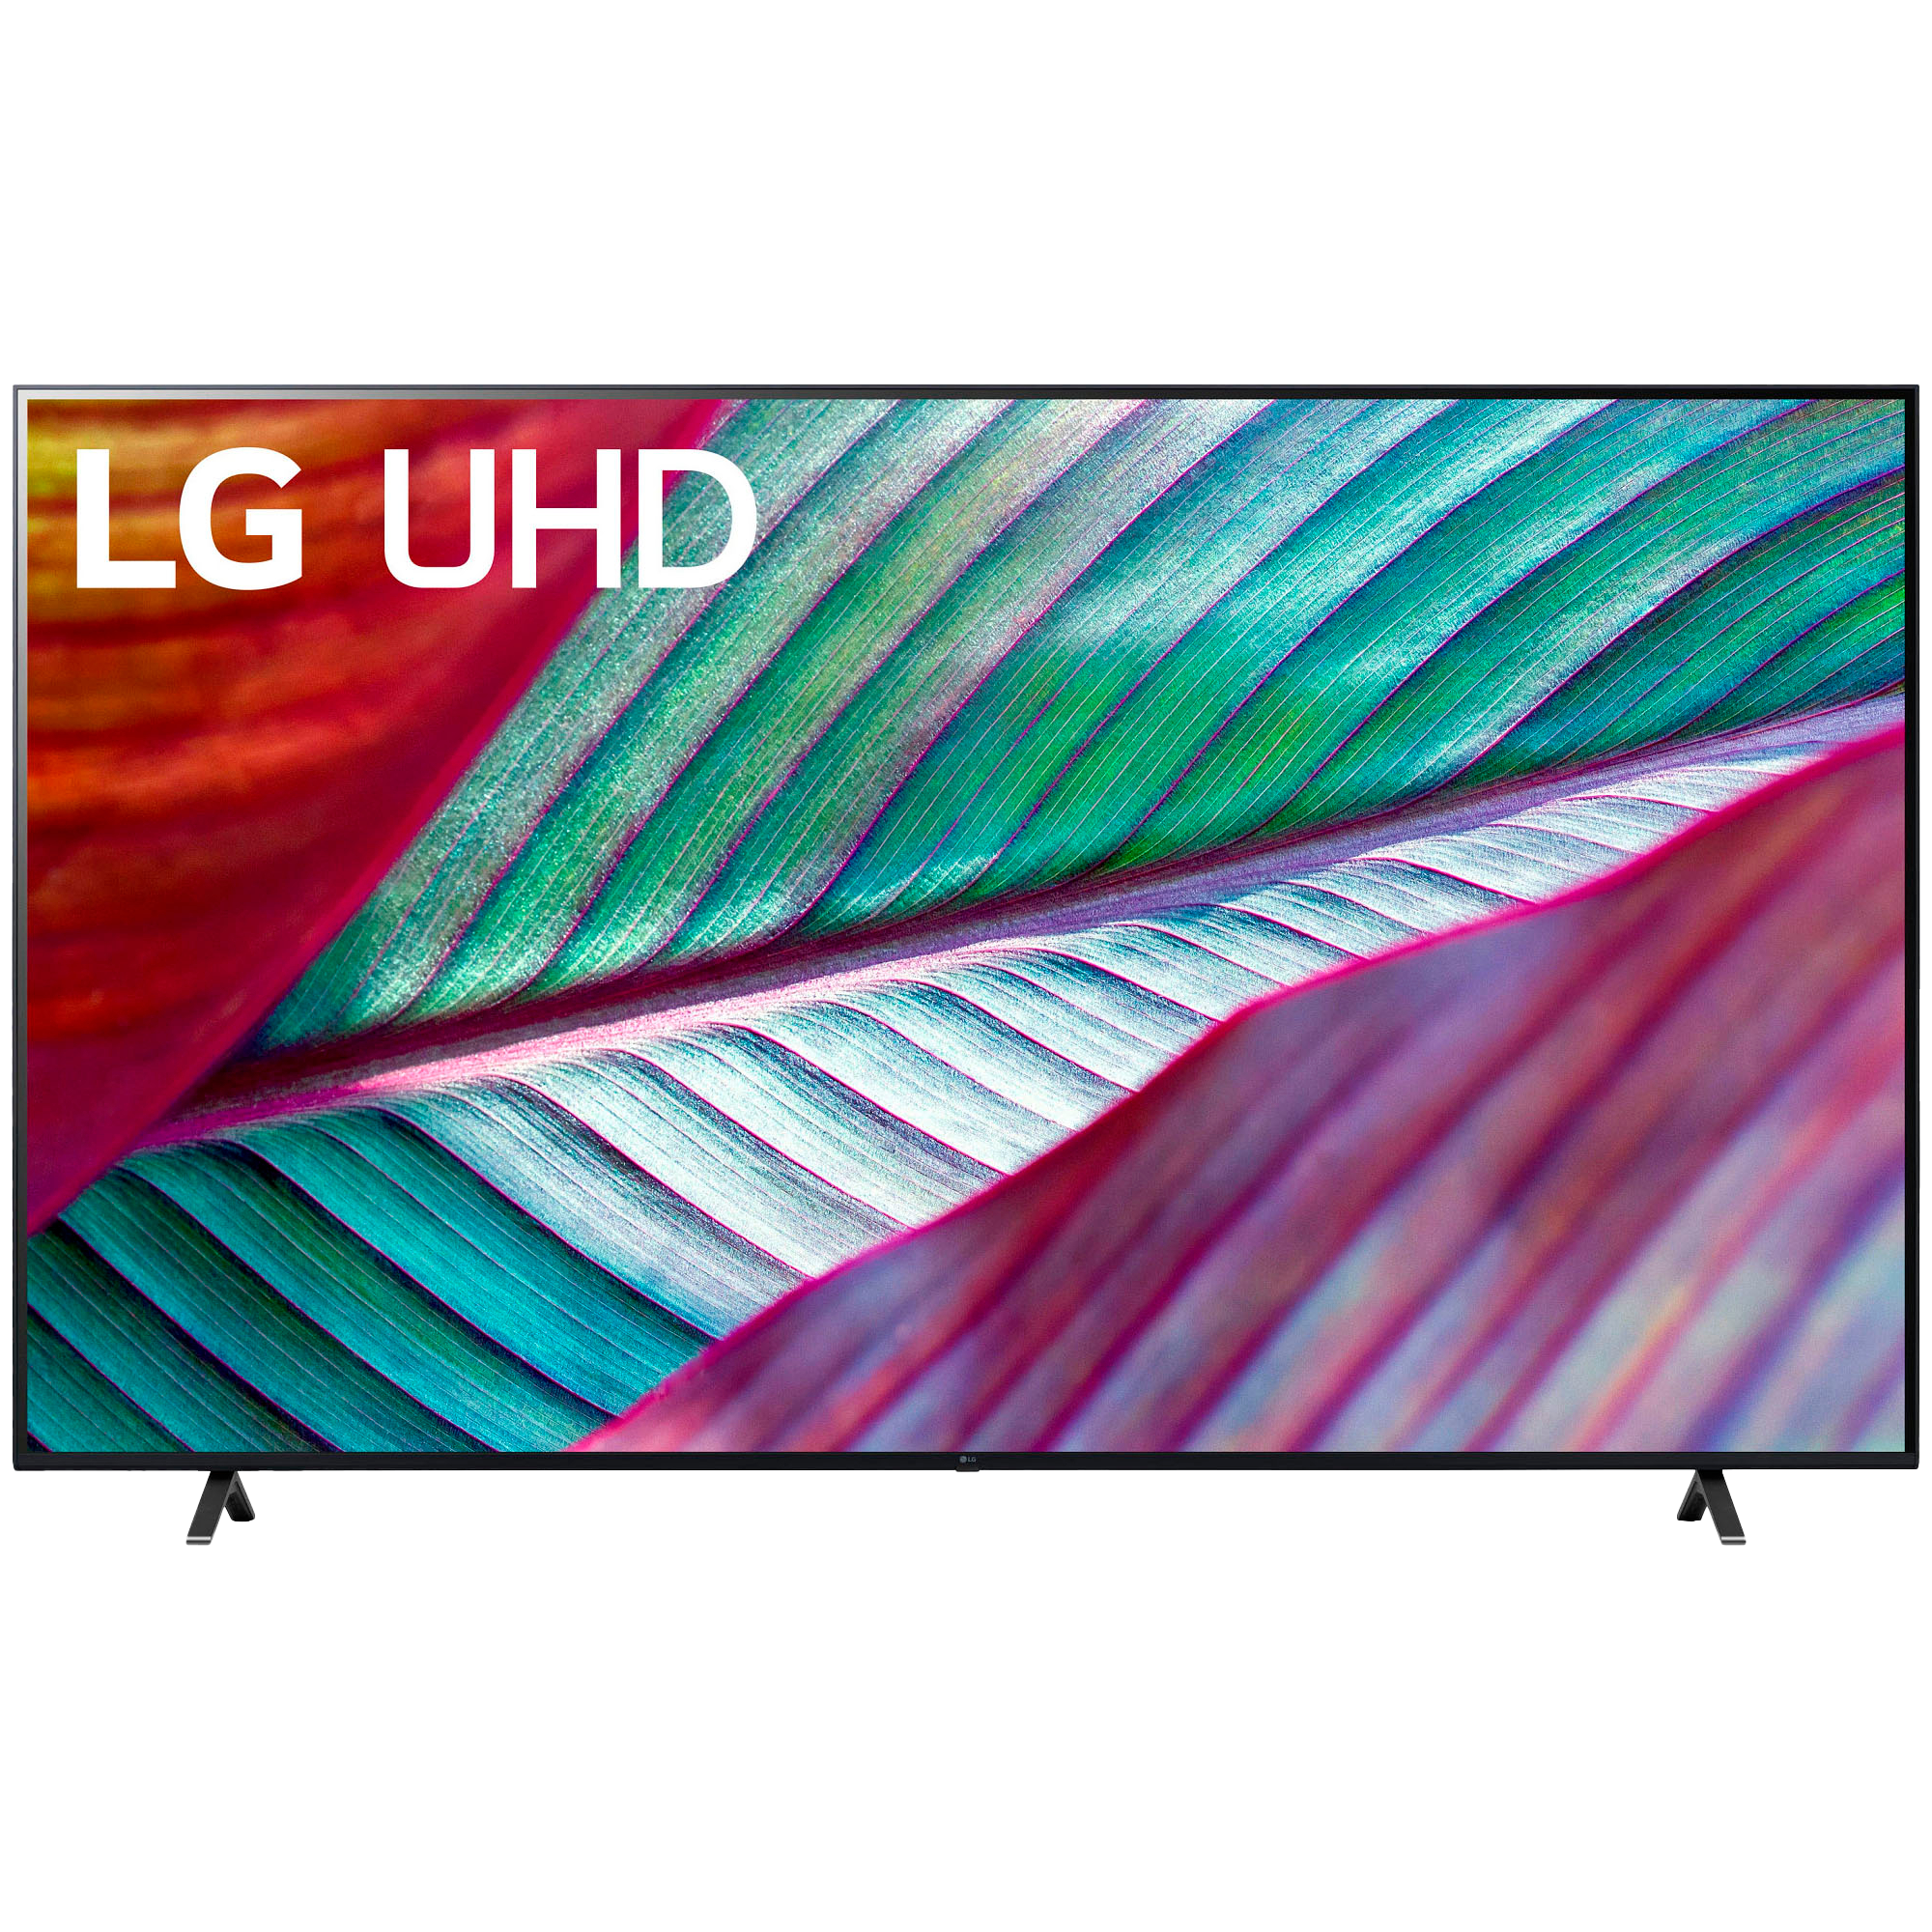 LG UR7800 TV